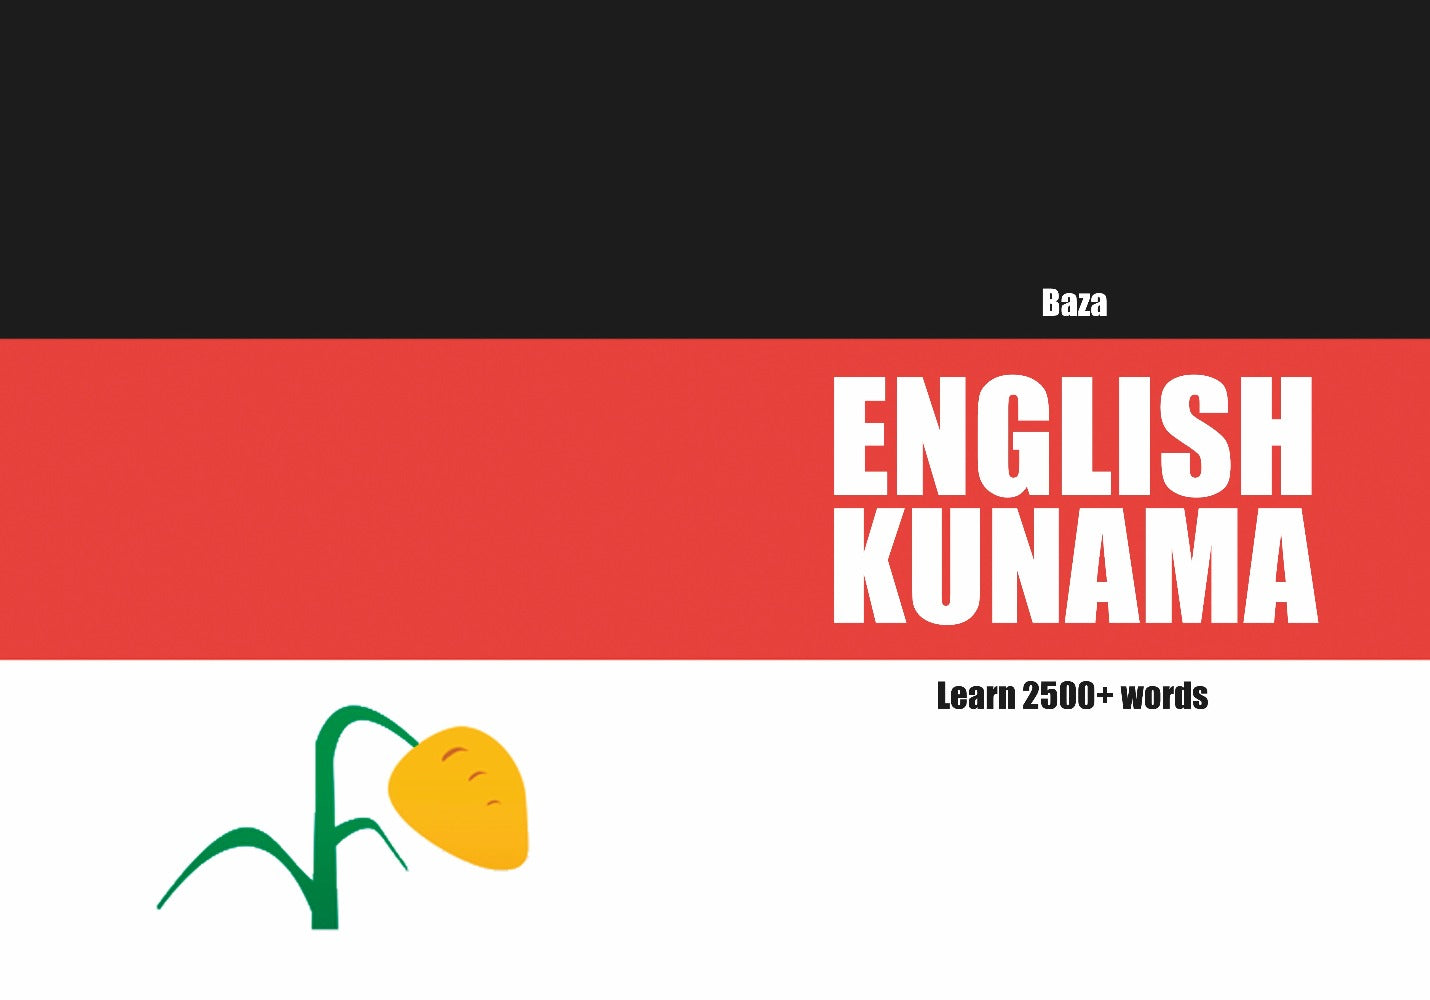 Kunama language learning notebook cover